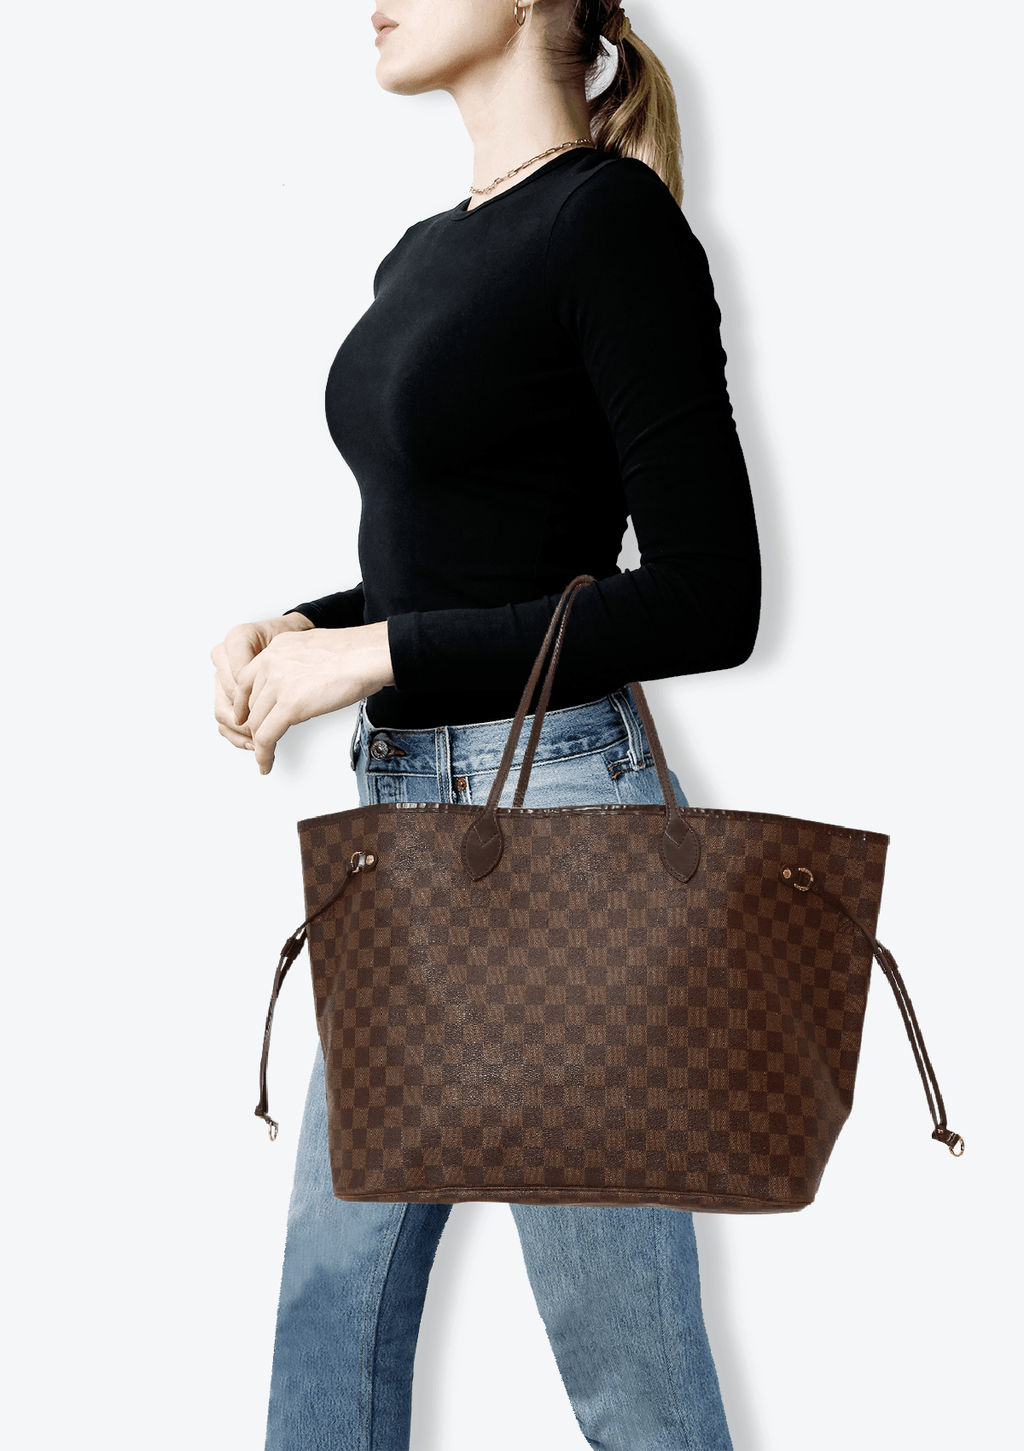 Quanto custa uma bolsa Neverfull da Louis Vuitton? - Etiqueta Unica